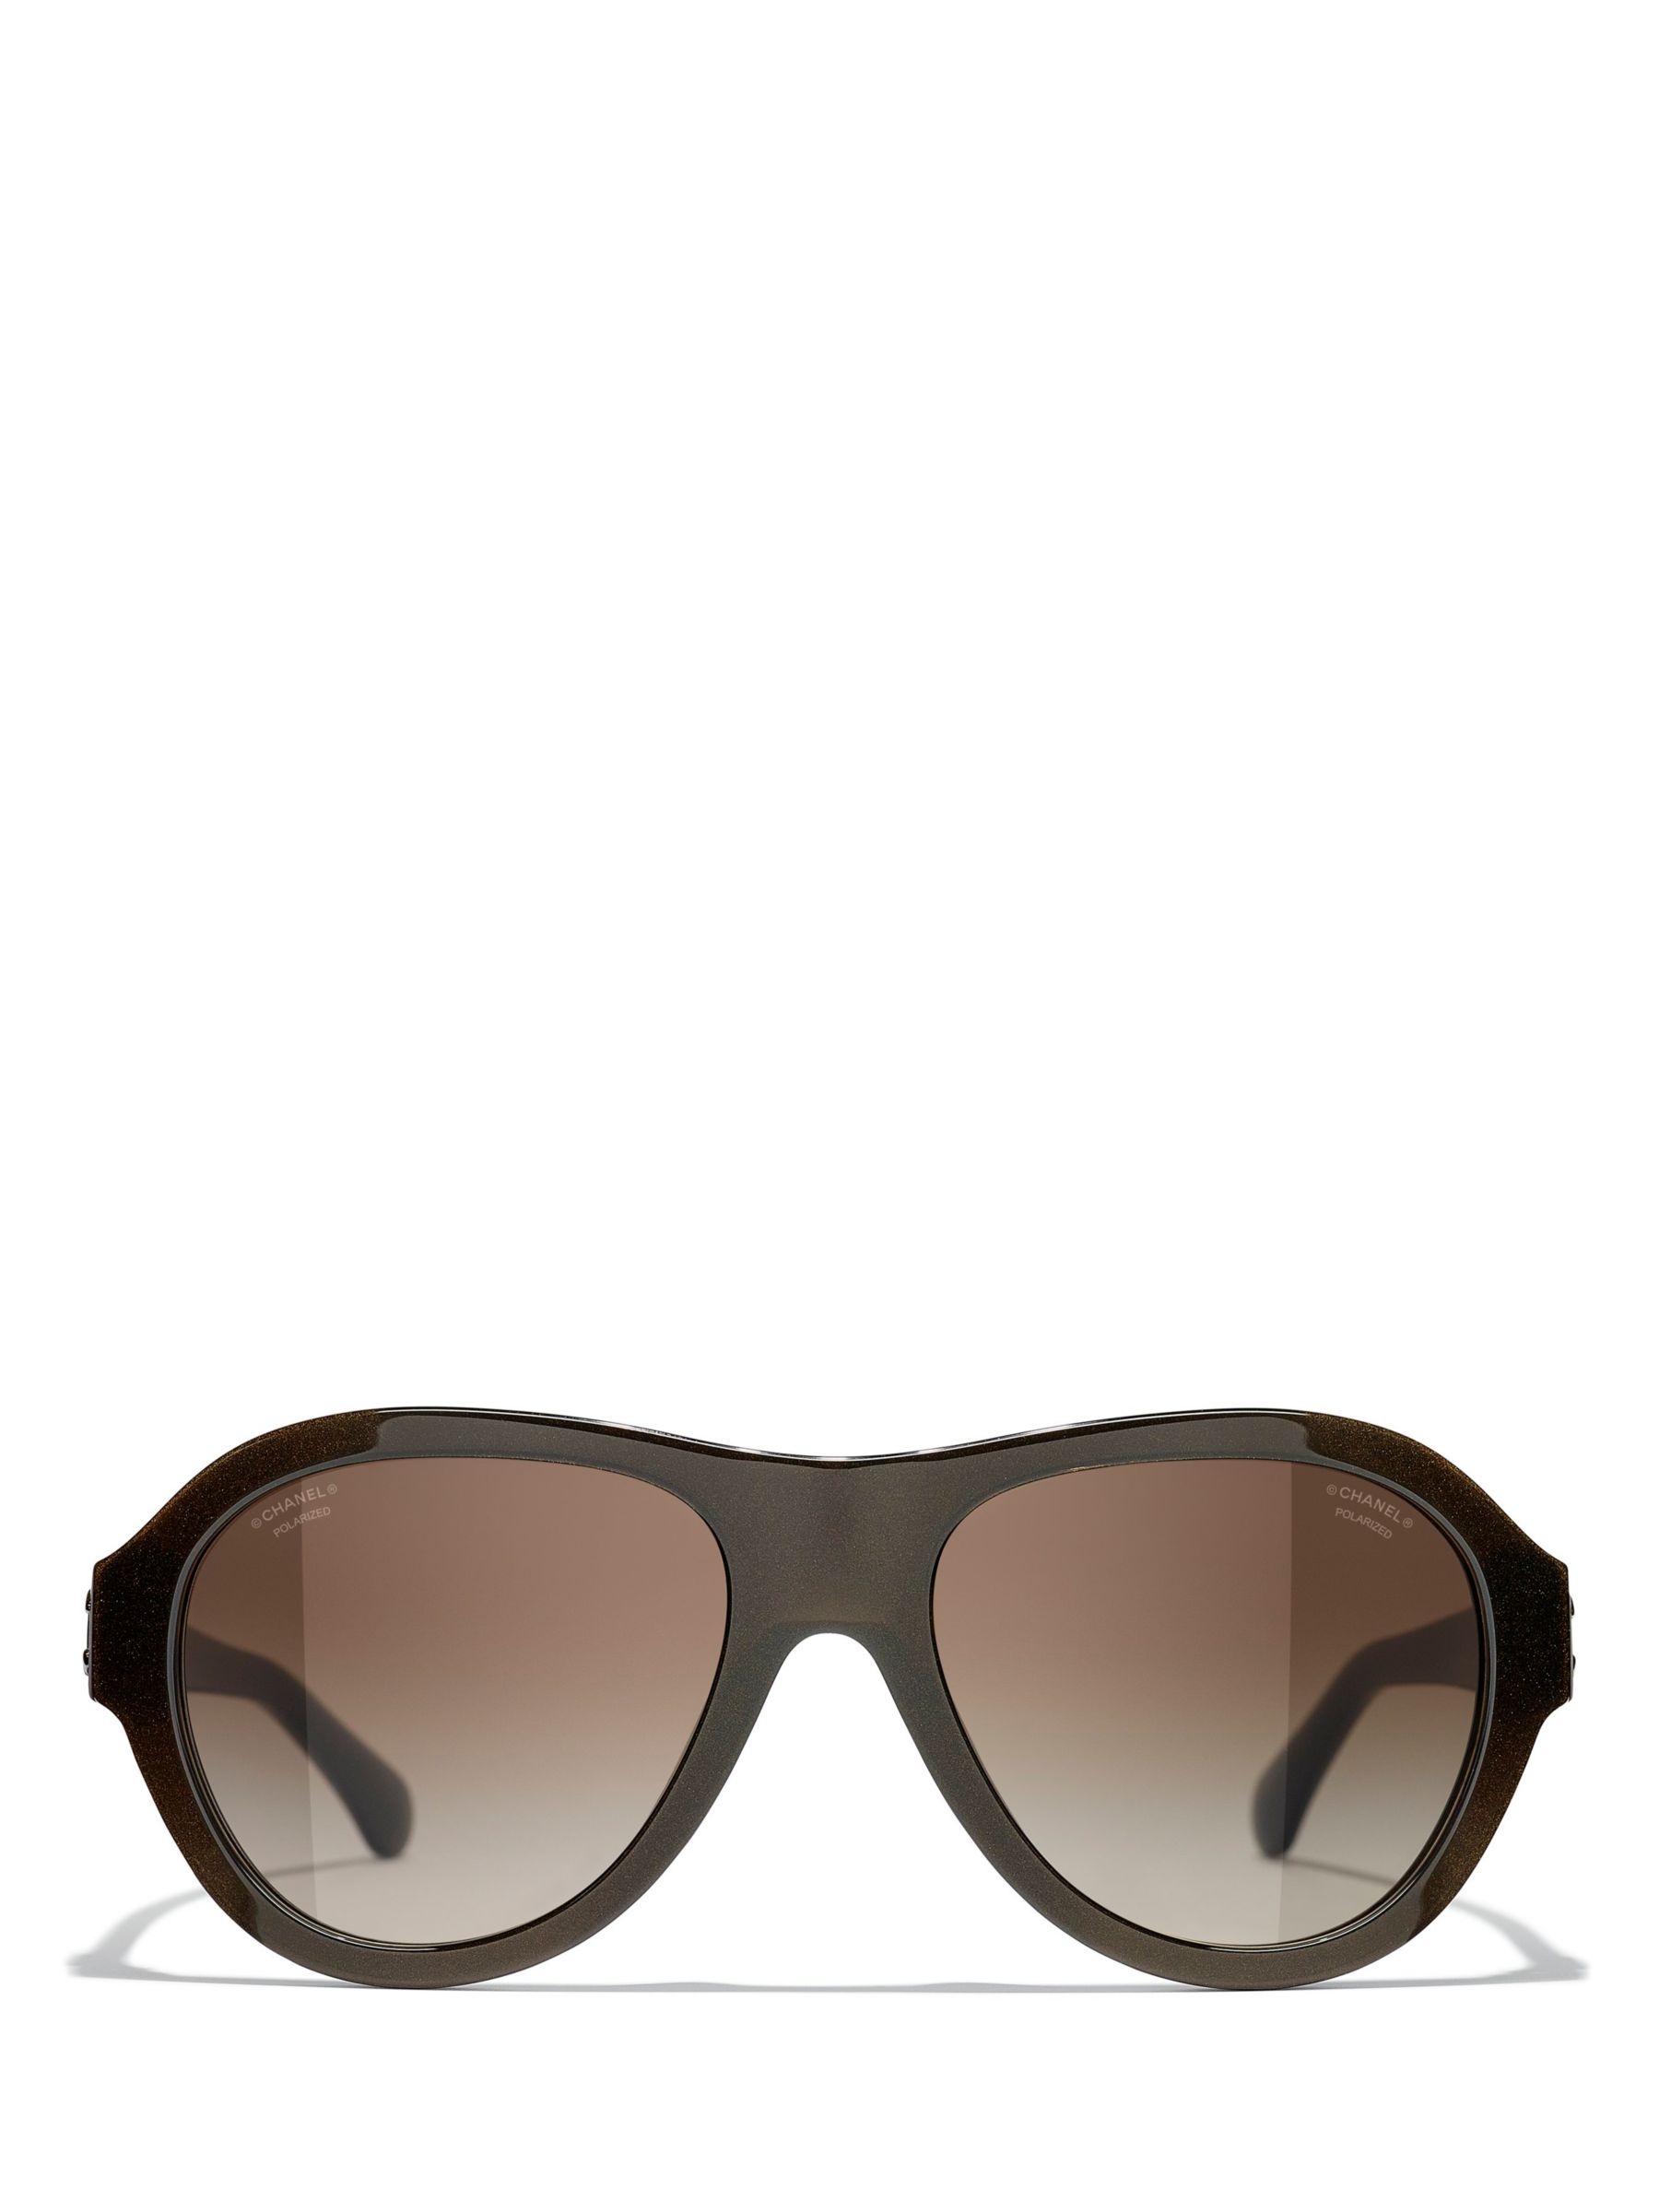 CHANEL Men's Sunglasses